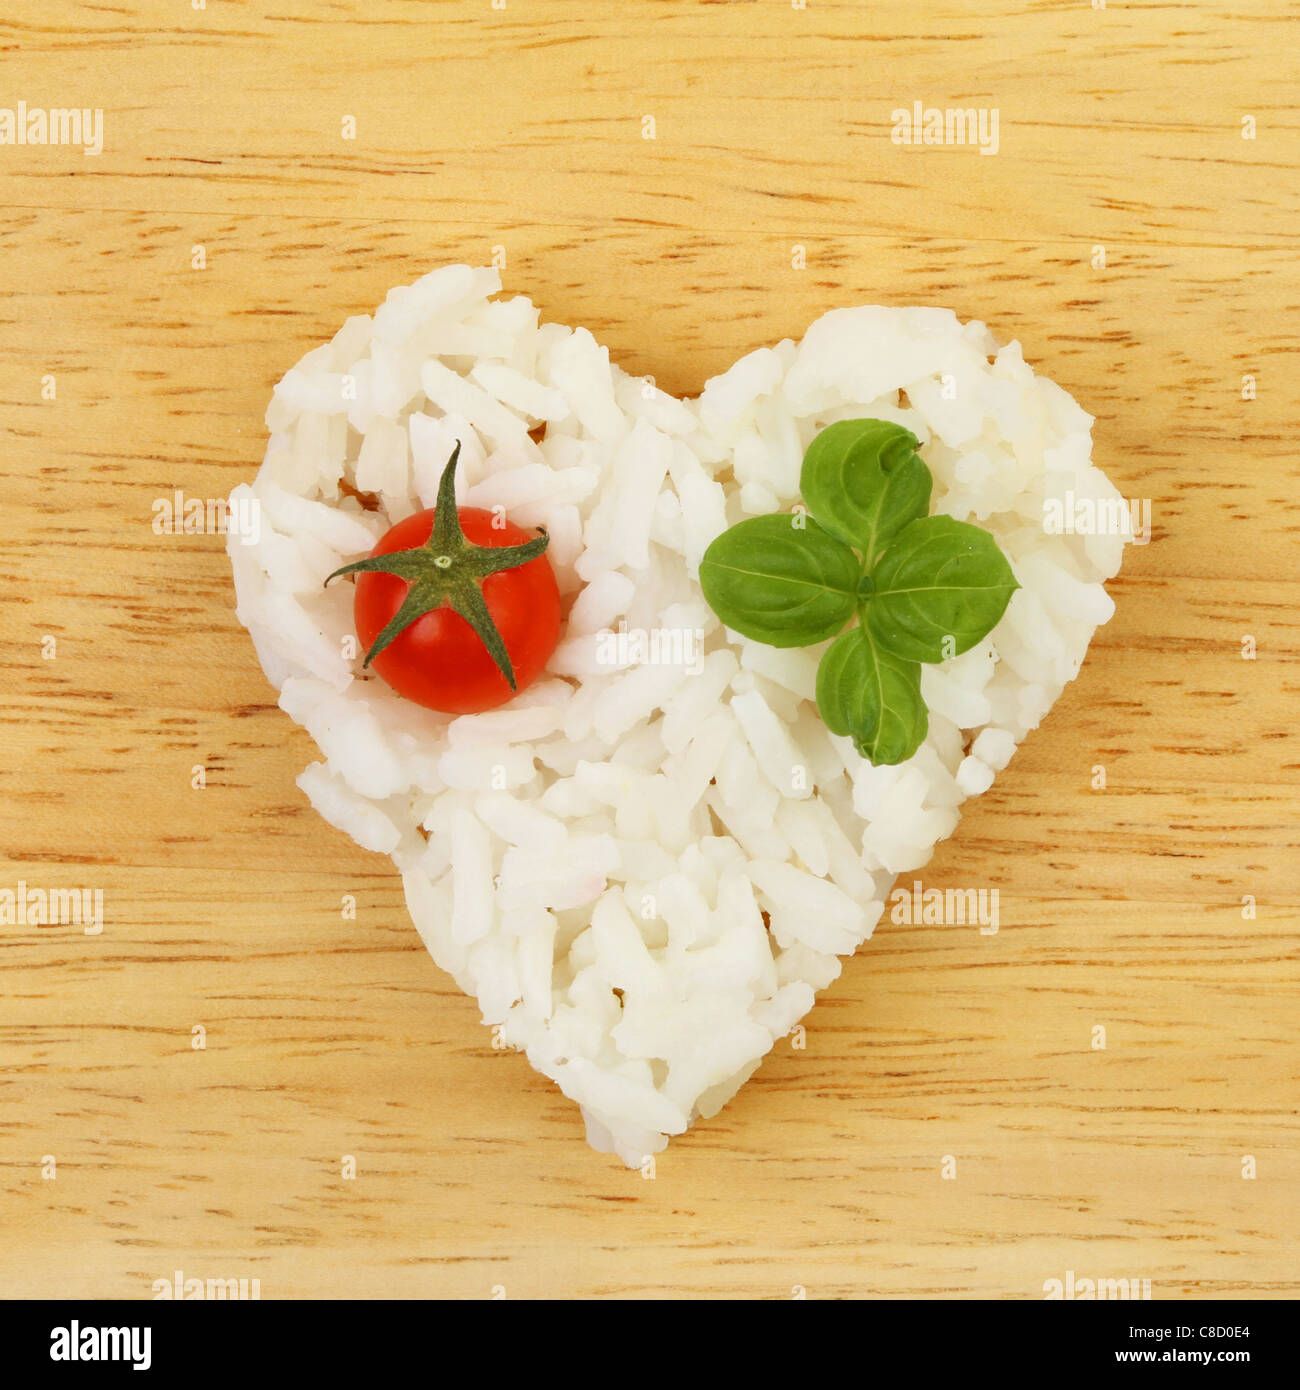 L'alimentation saine, le riz en forme de coeur avec tomate et basilic sur une planche en bois Banque D'Images